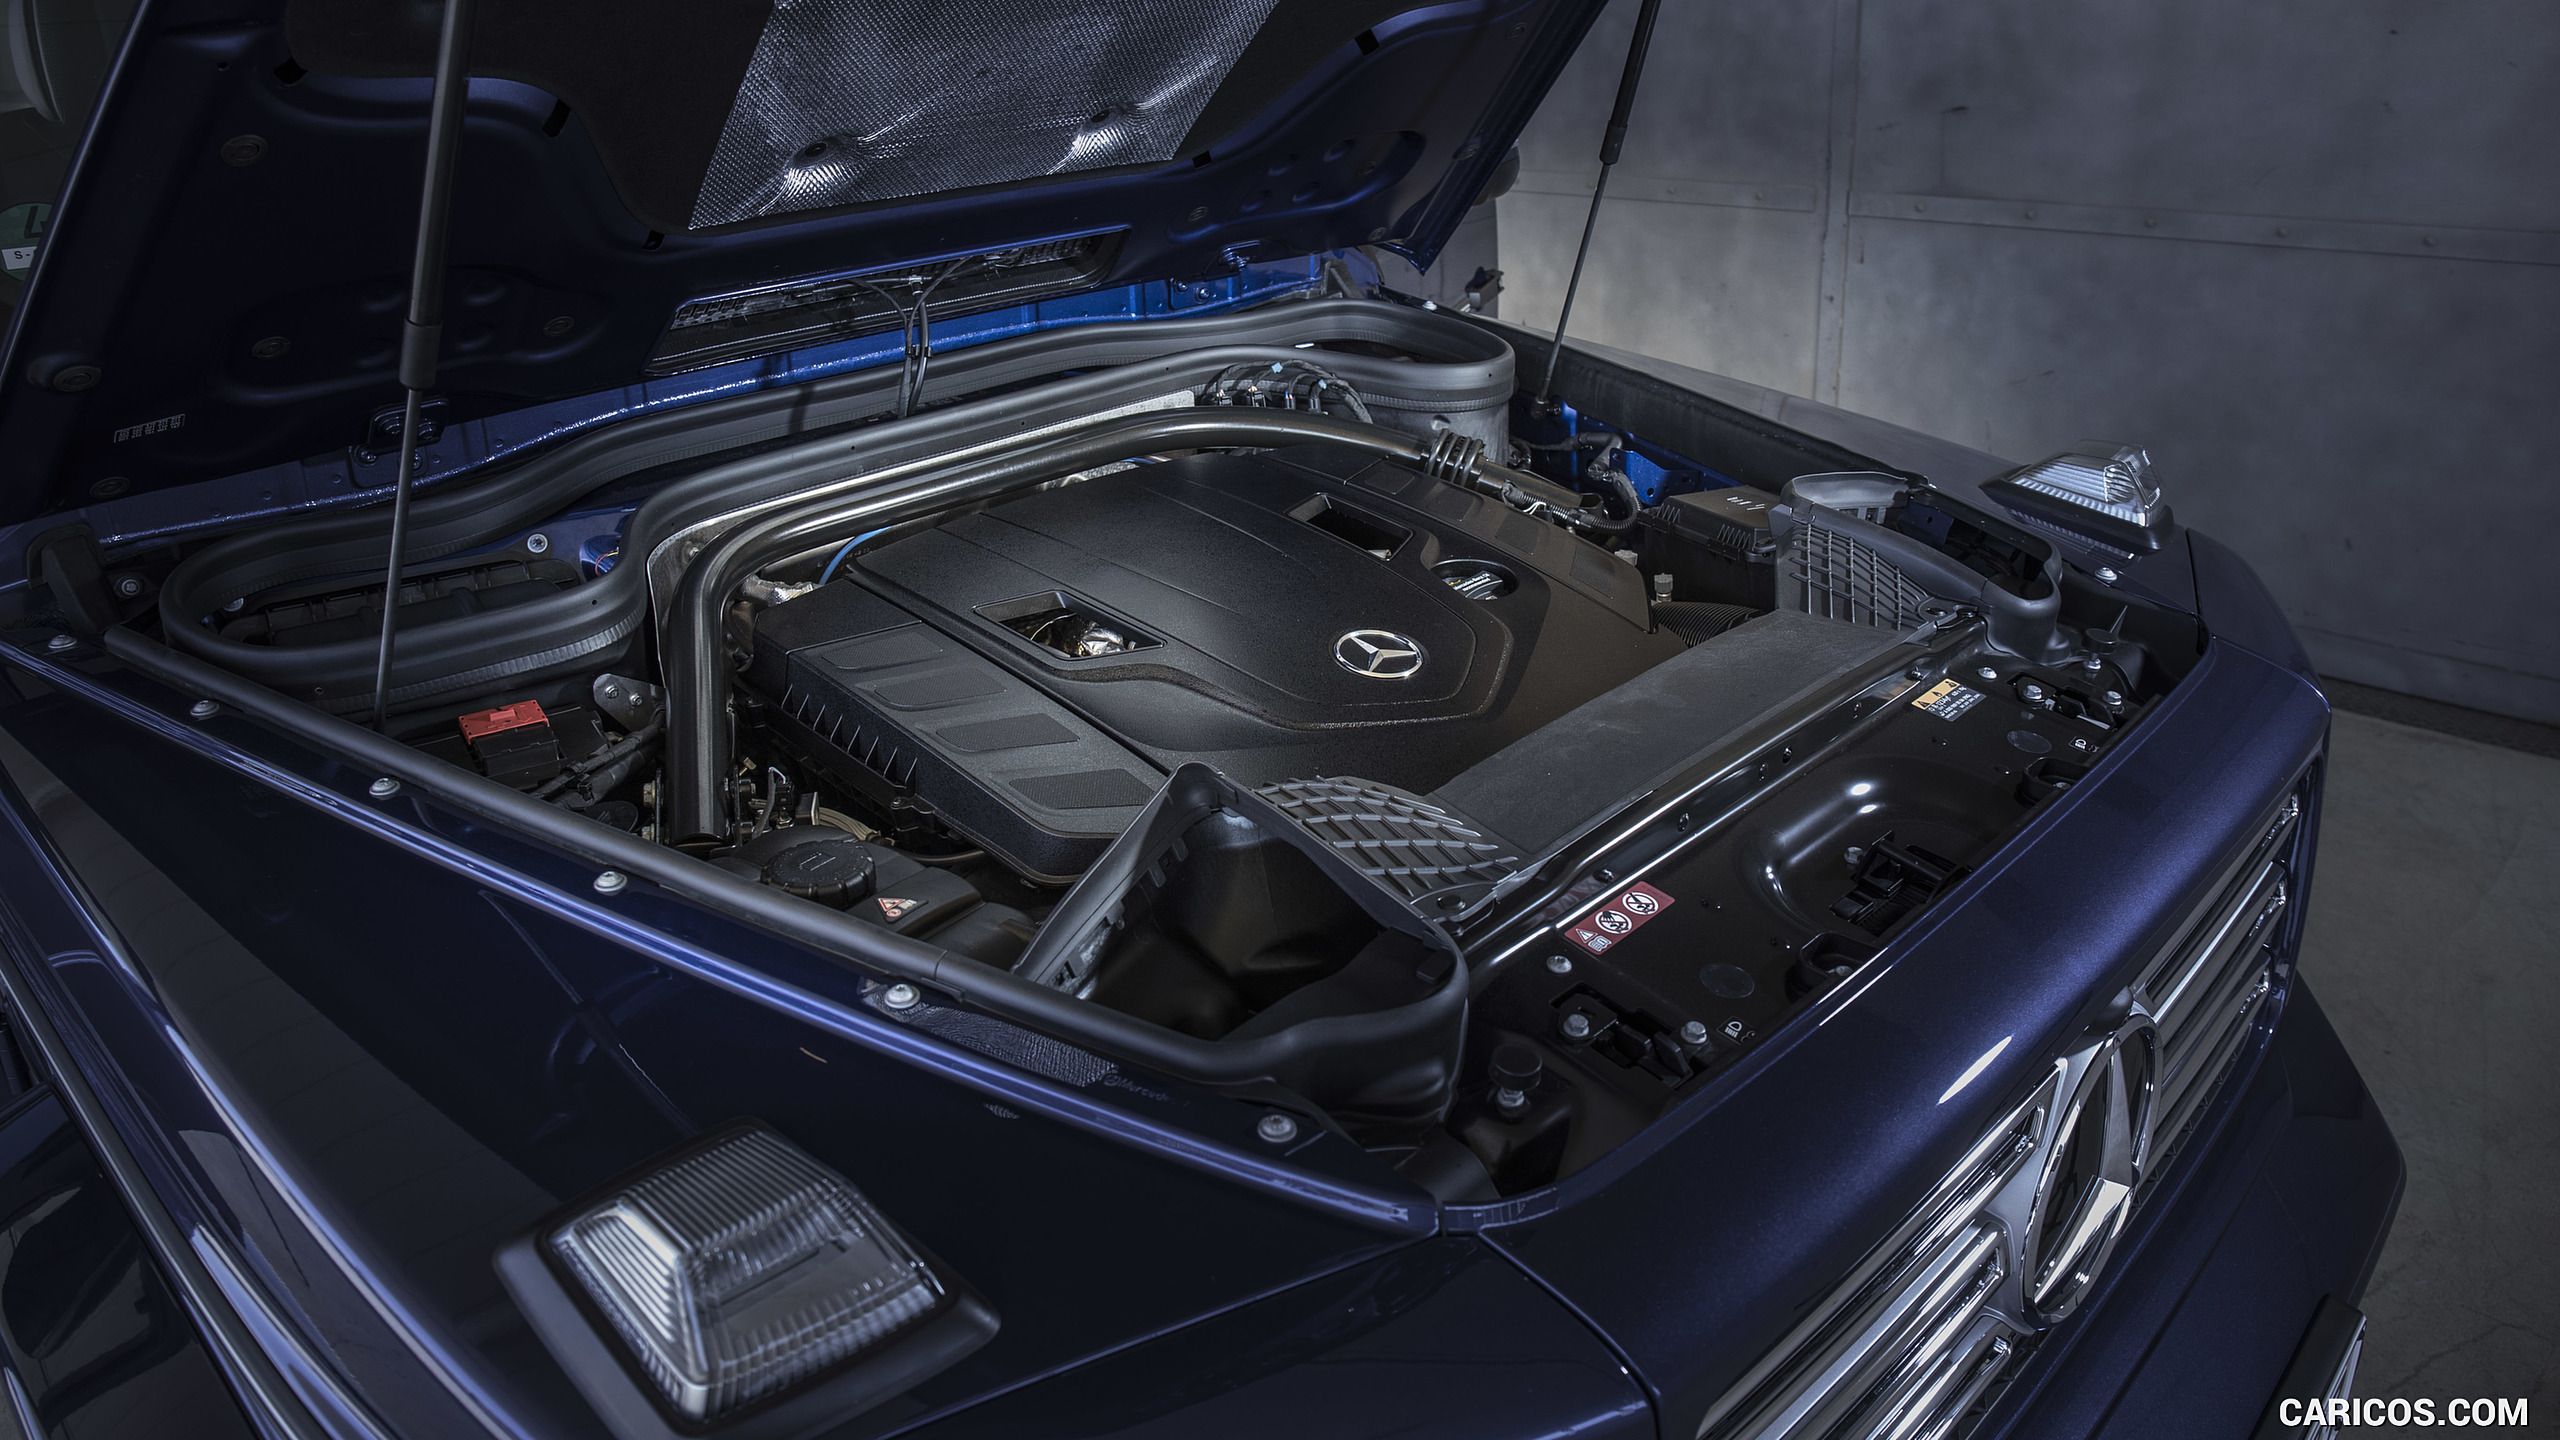 2019 Mercedes-Benz G-Class G550 - Engine, #238 of 397